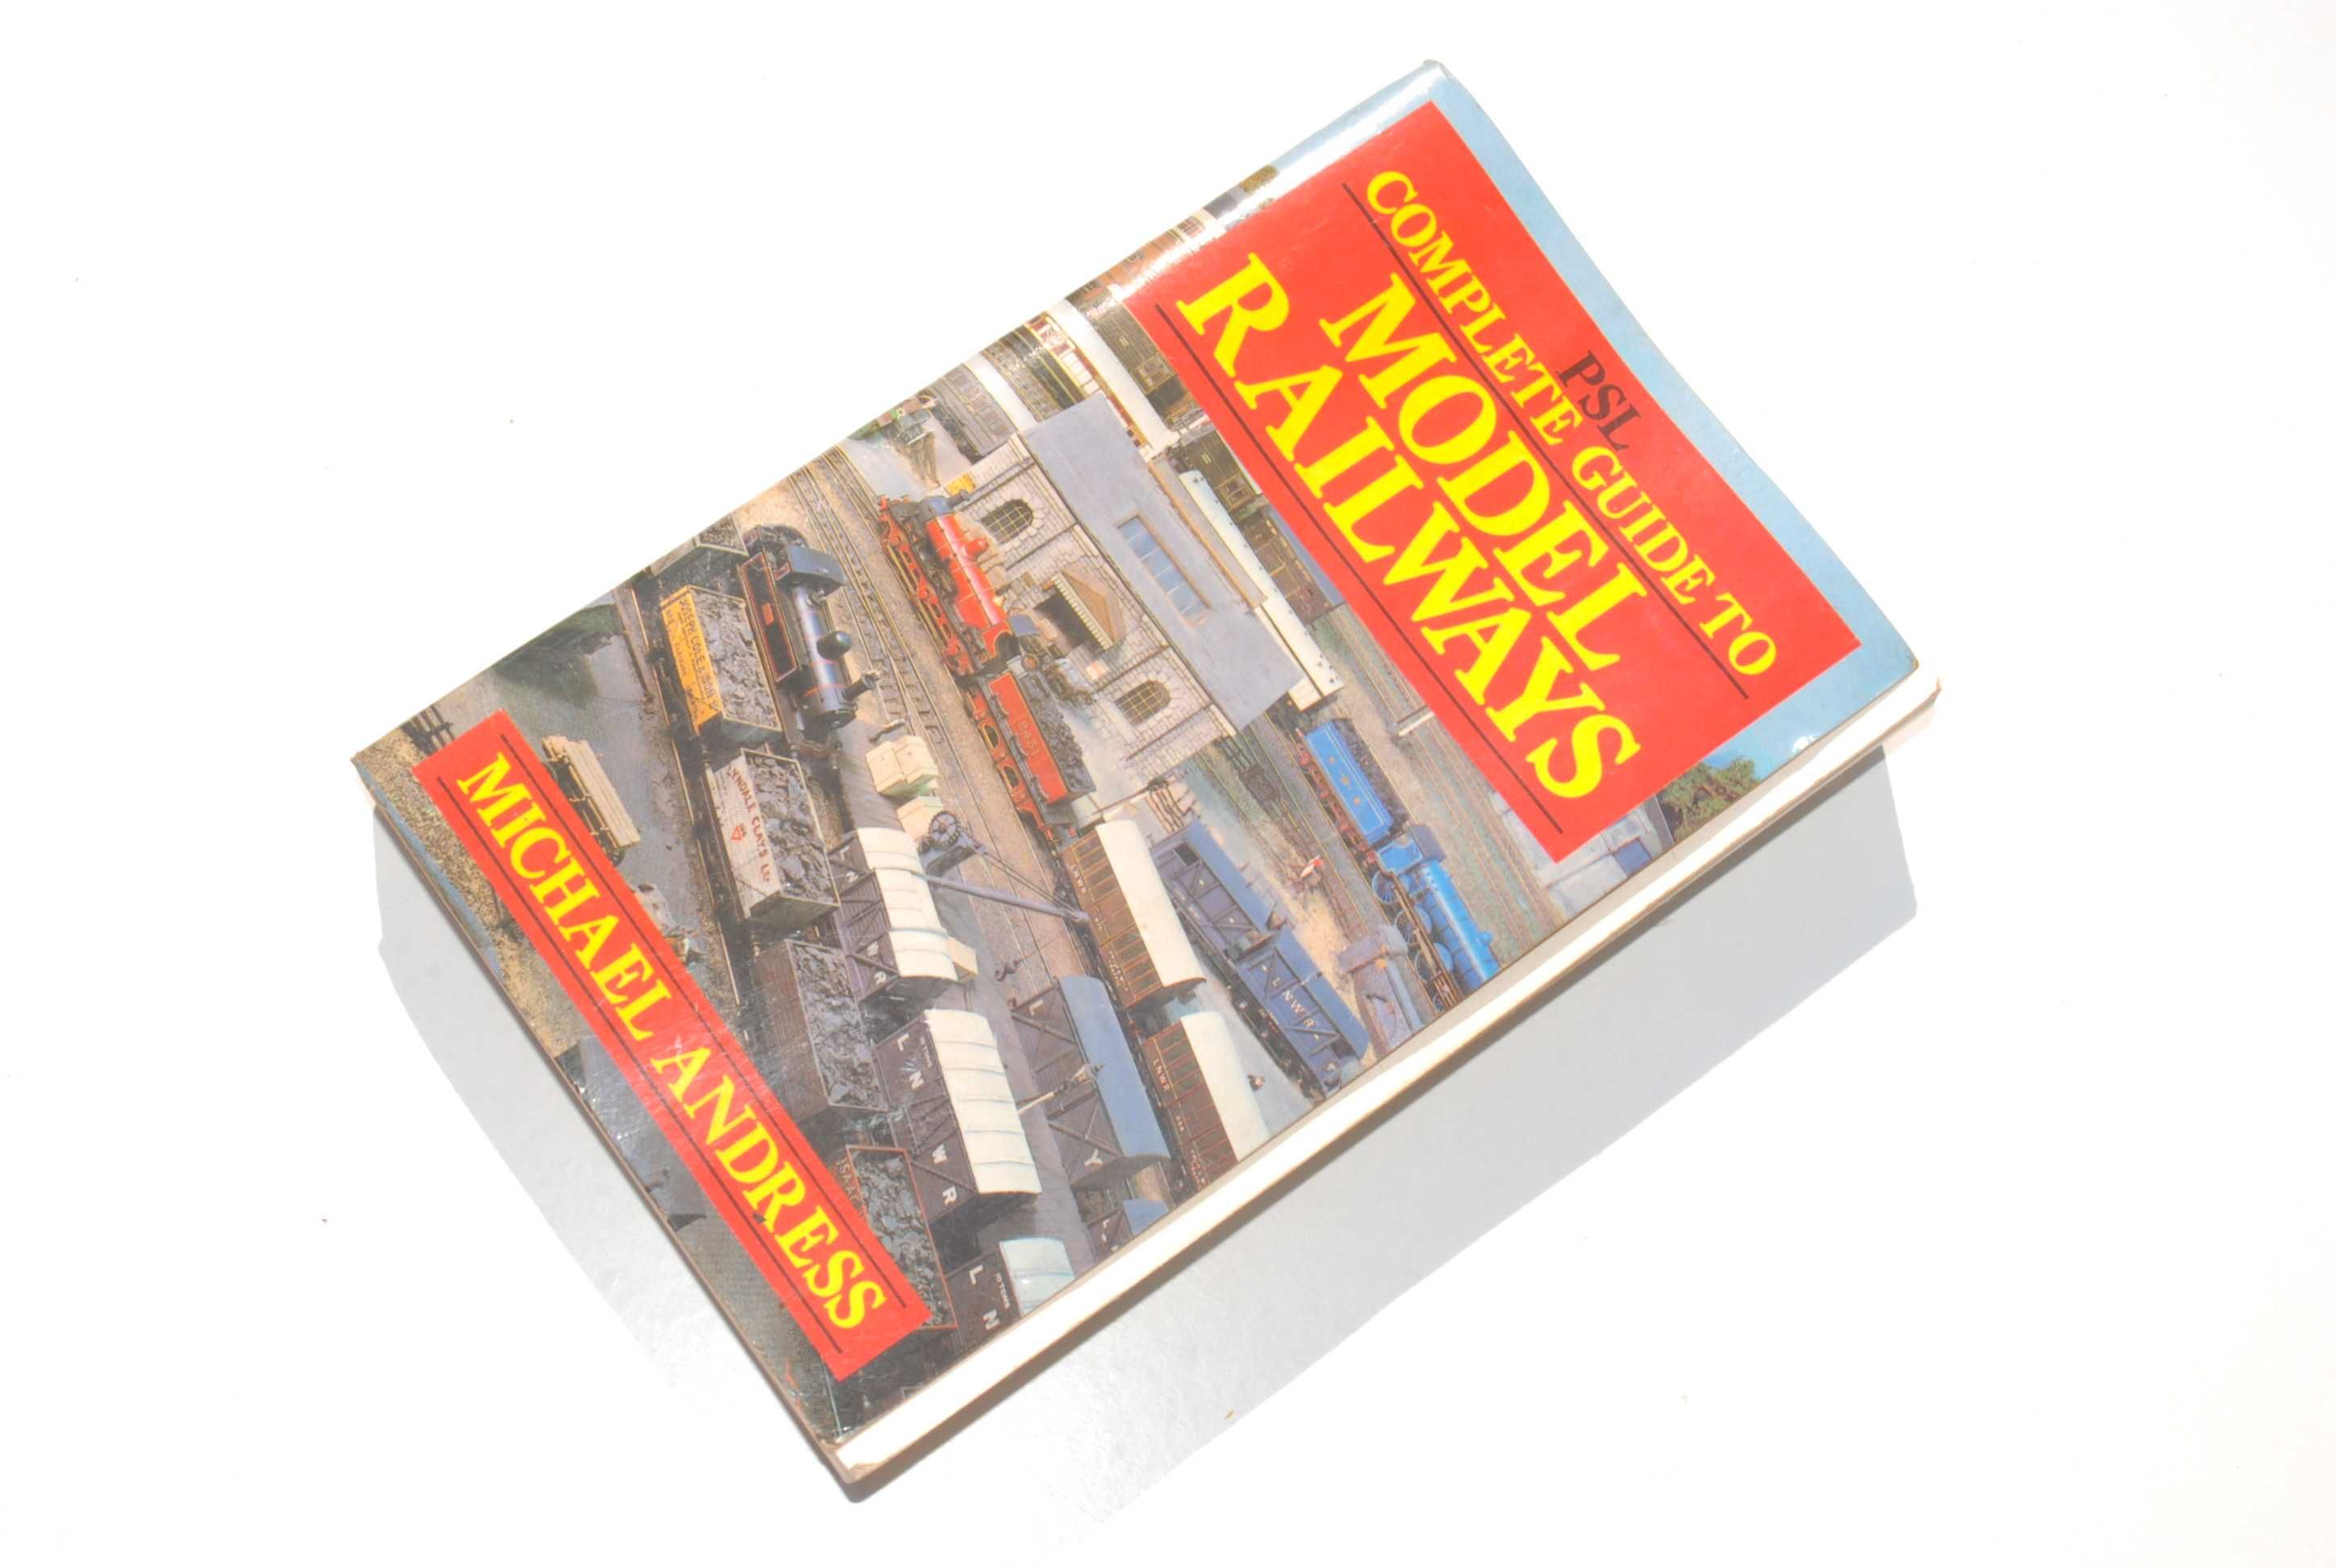 Stara książka przewodnik po modelach kolejowych 1986